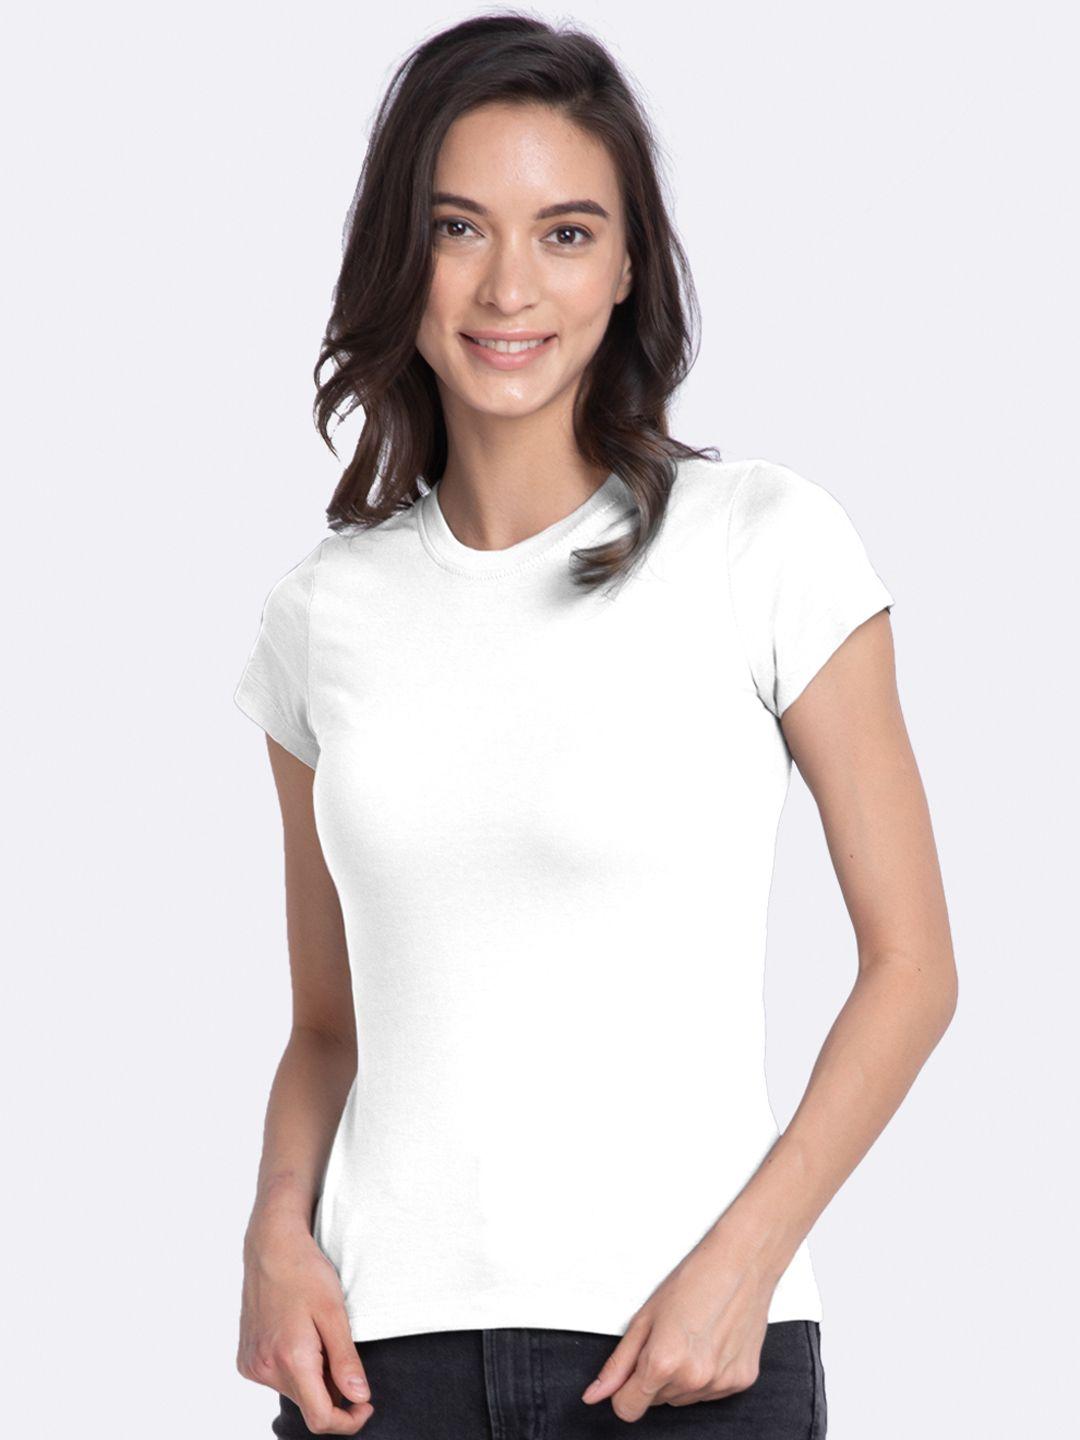 bewakoof women white solid round neck t-shirt